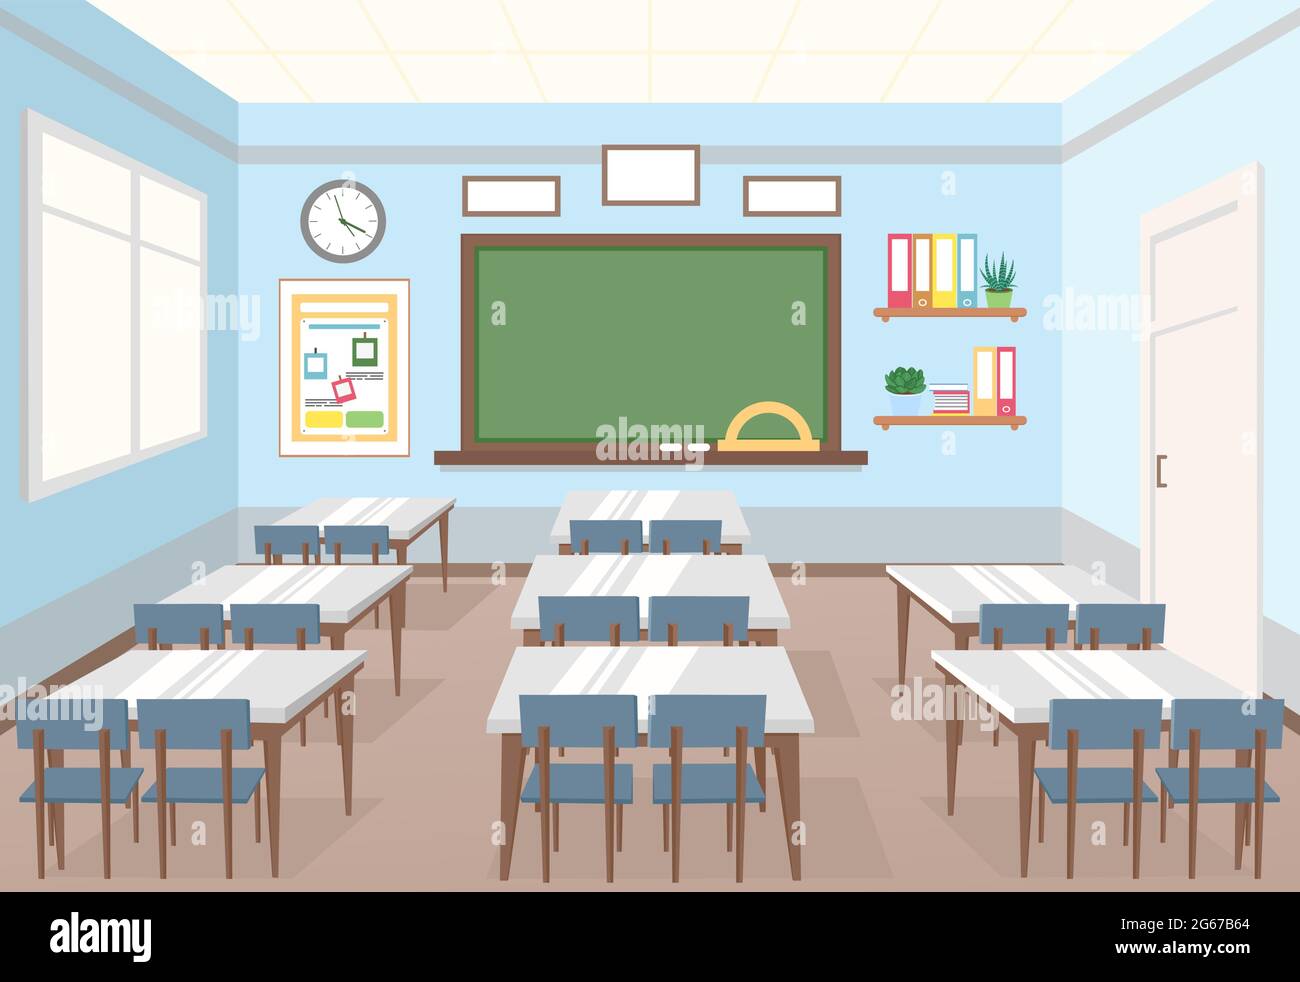 Illustrazione vettoriale della classe scolastica. Vuoto interno della classe con tavolo e scrivanie per bambini in stile cartoon piano. Illustrazione Vettoriale